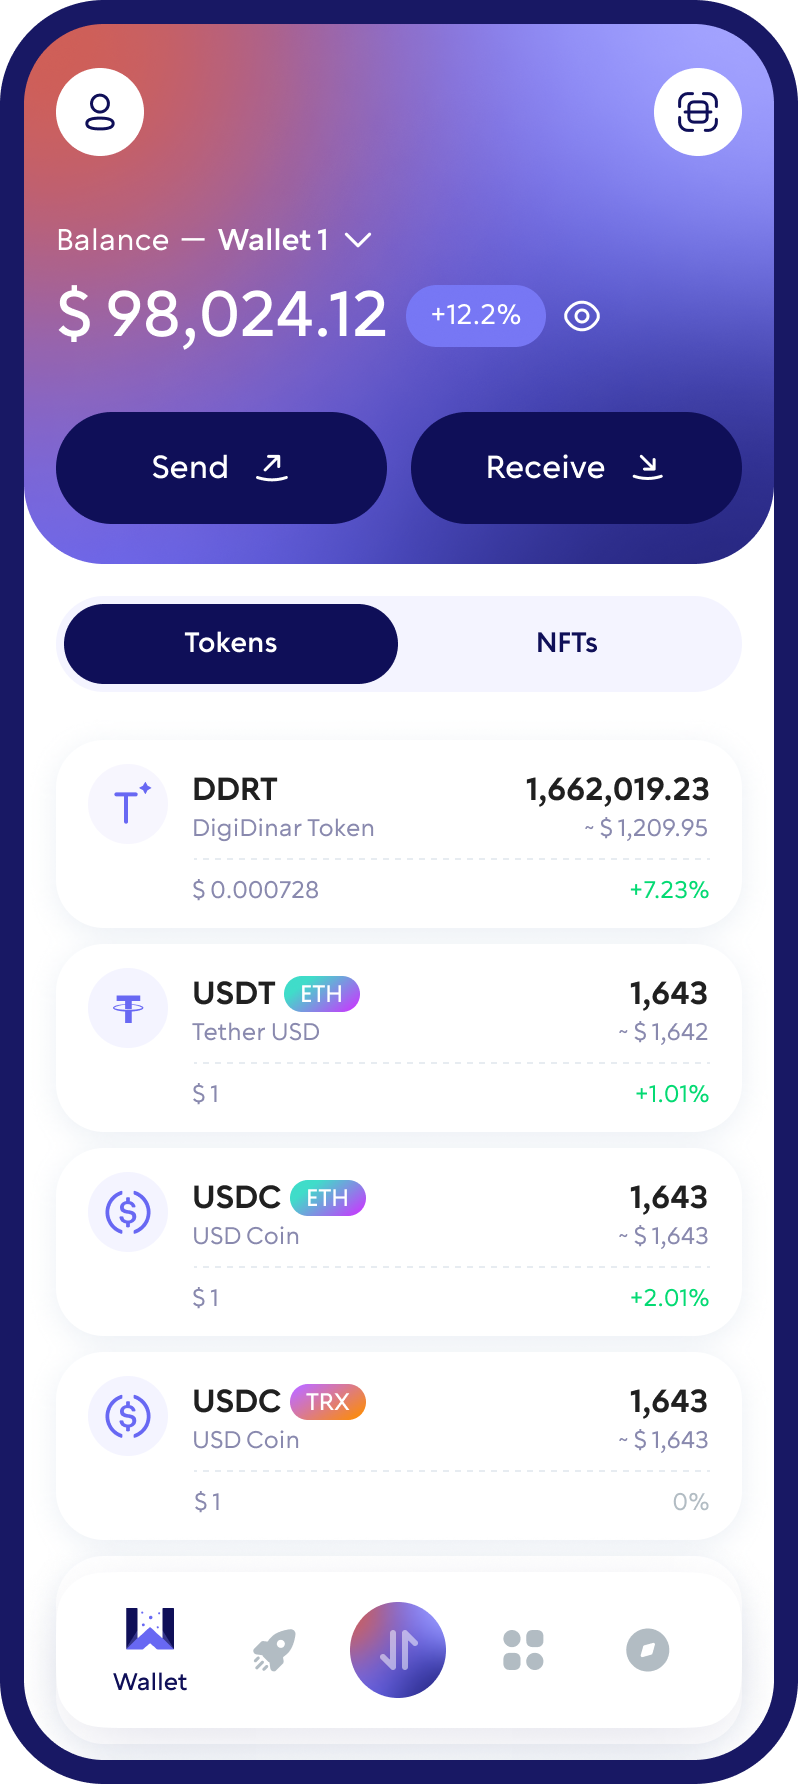 DigiDinar Token (DDRT) Cryptocurrency Wallet Walletverse